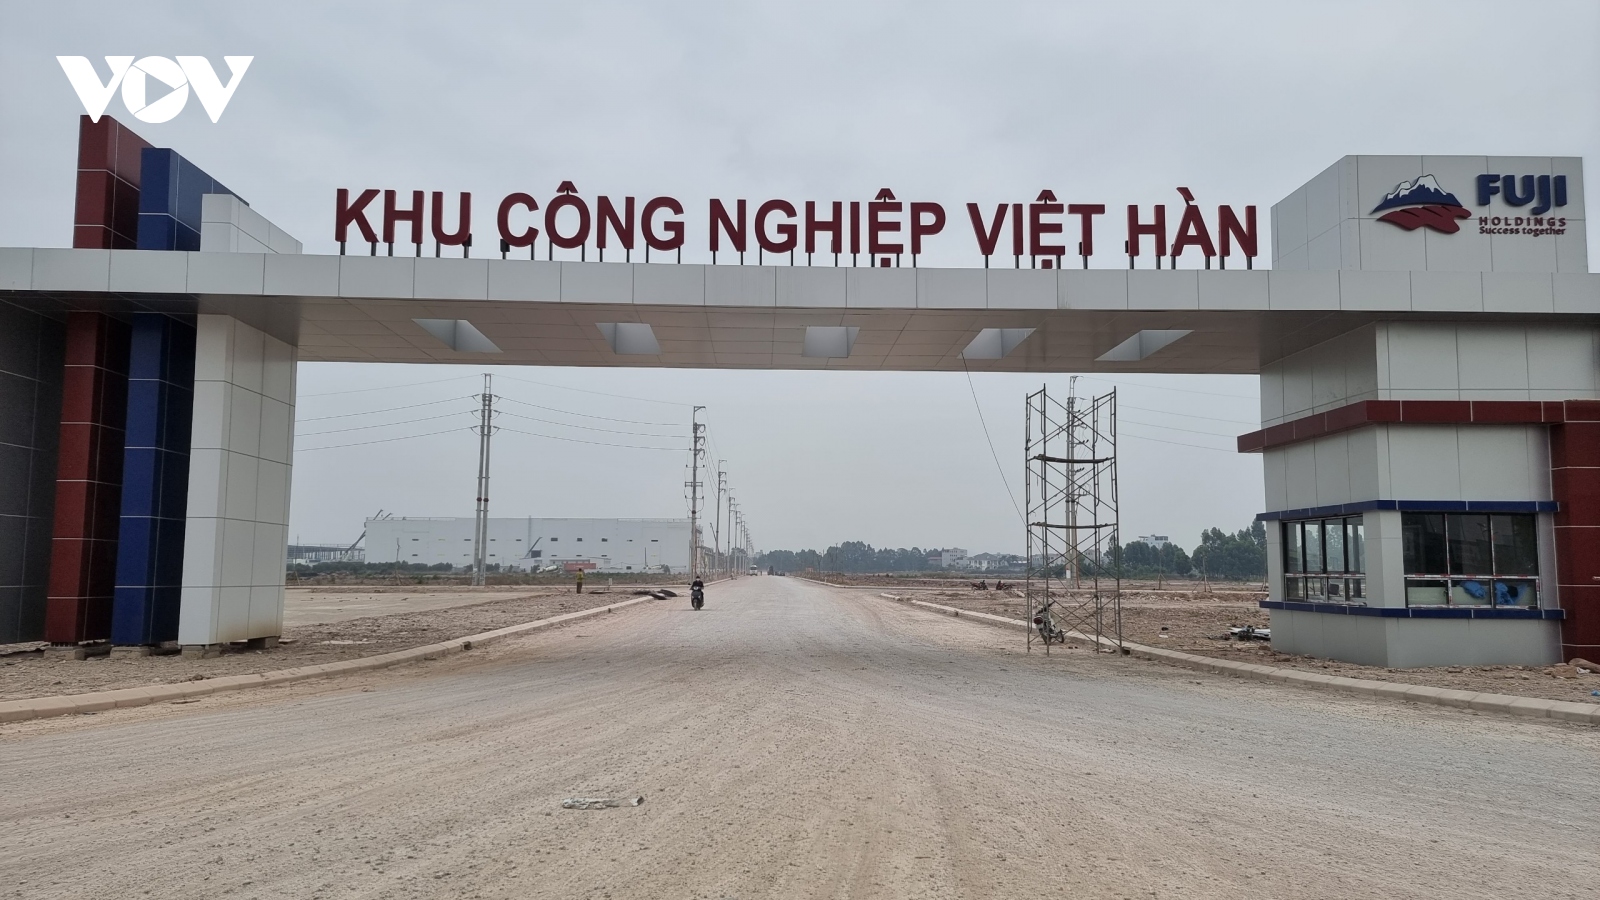 Khu công nghiệp Bắc Giang giảm hơn 13.000 lao động so với trước Tết